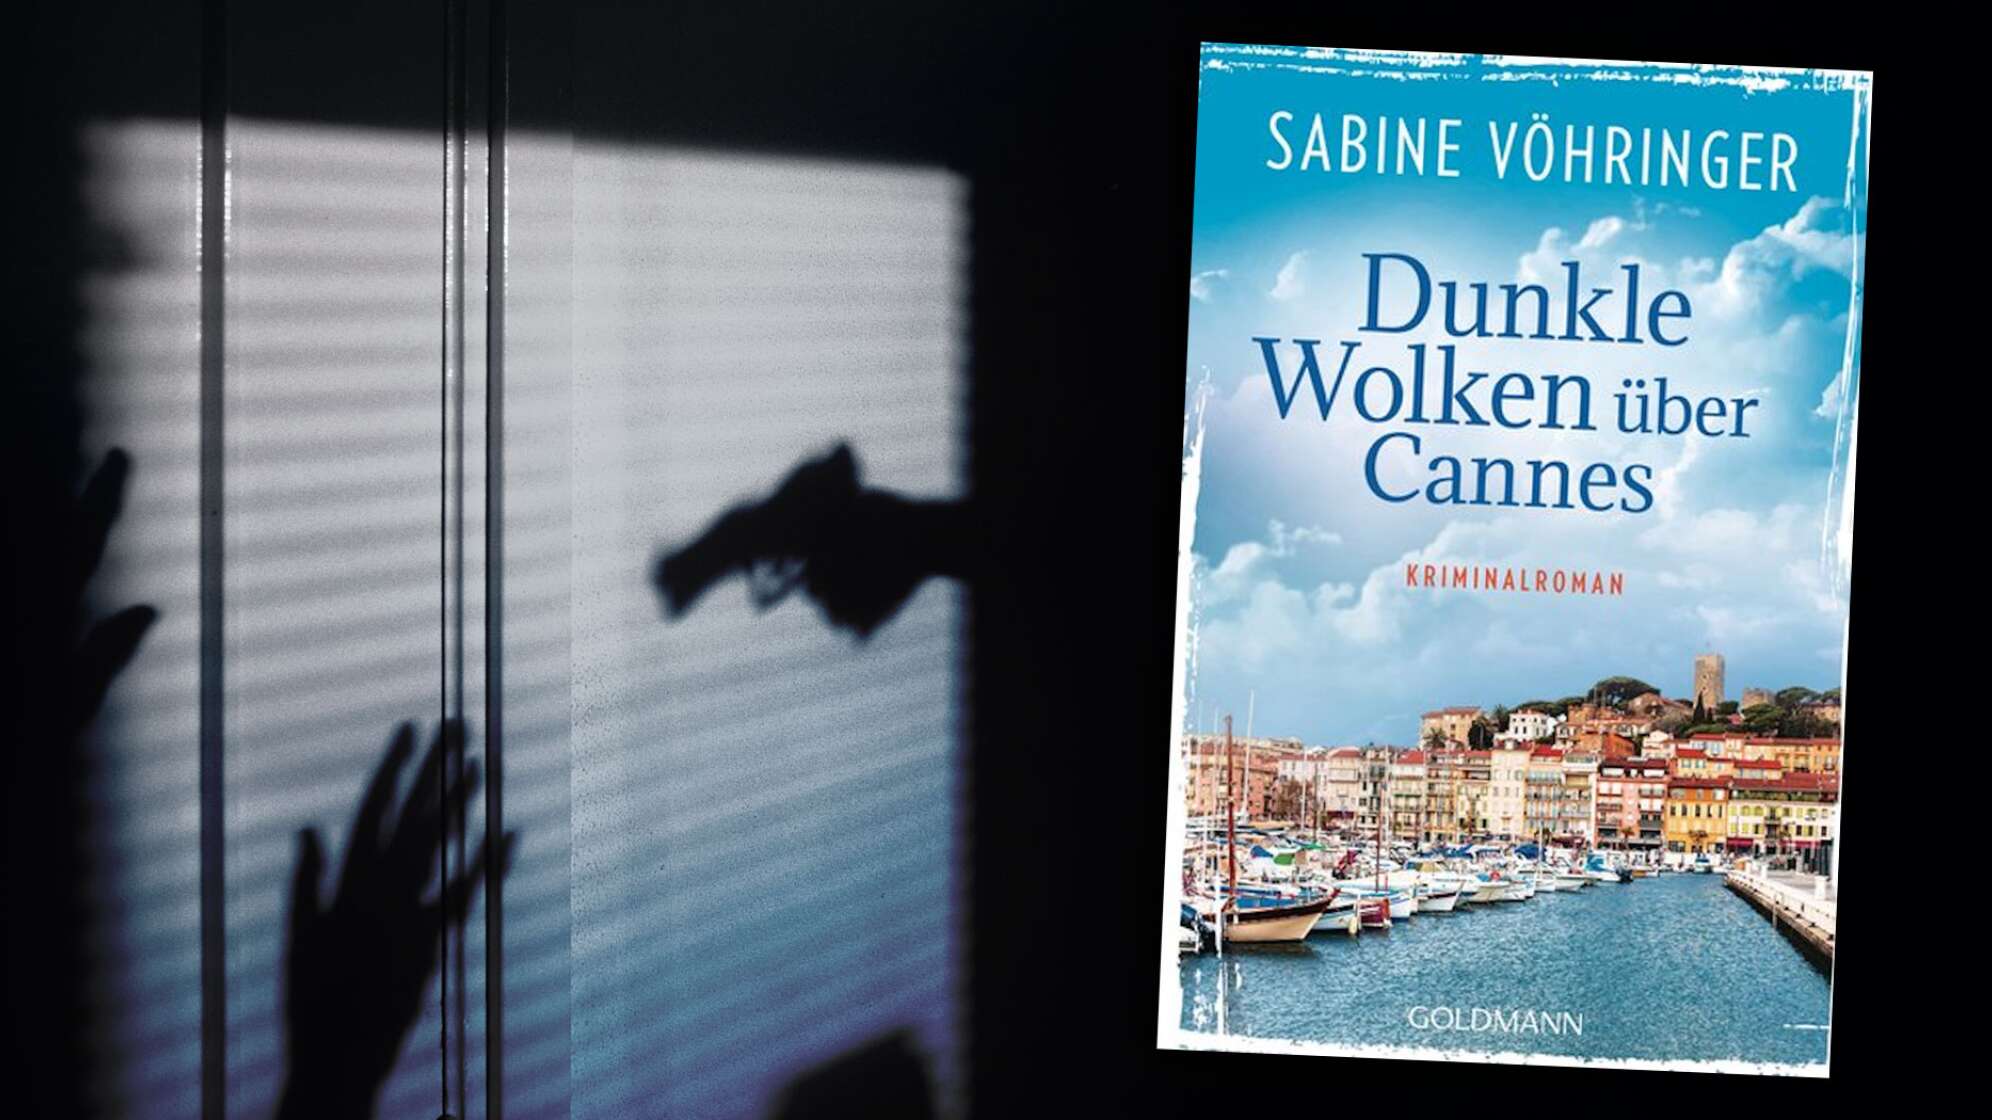 Krimi-Stunde: Sabine Vöhringer - "Dunkle Wolken über Cannes"